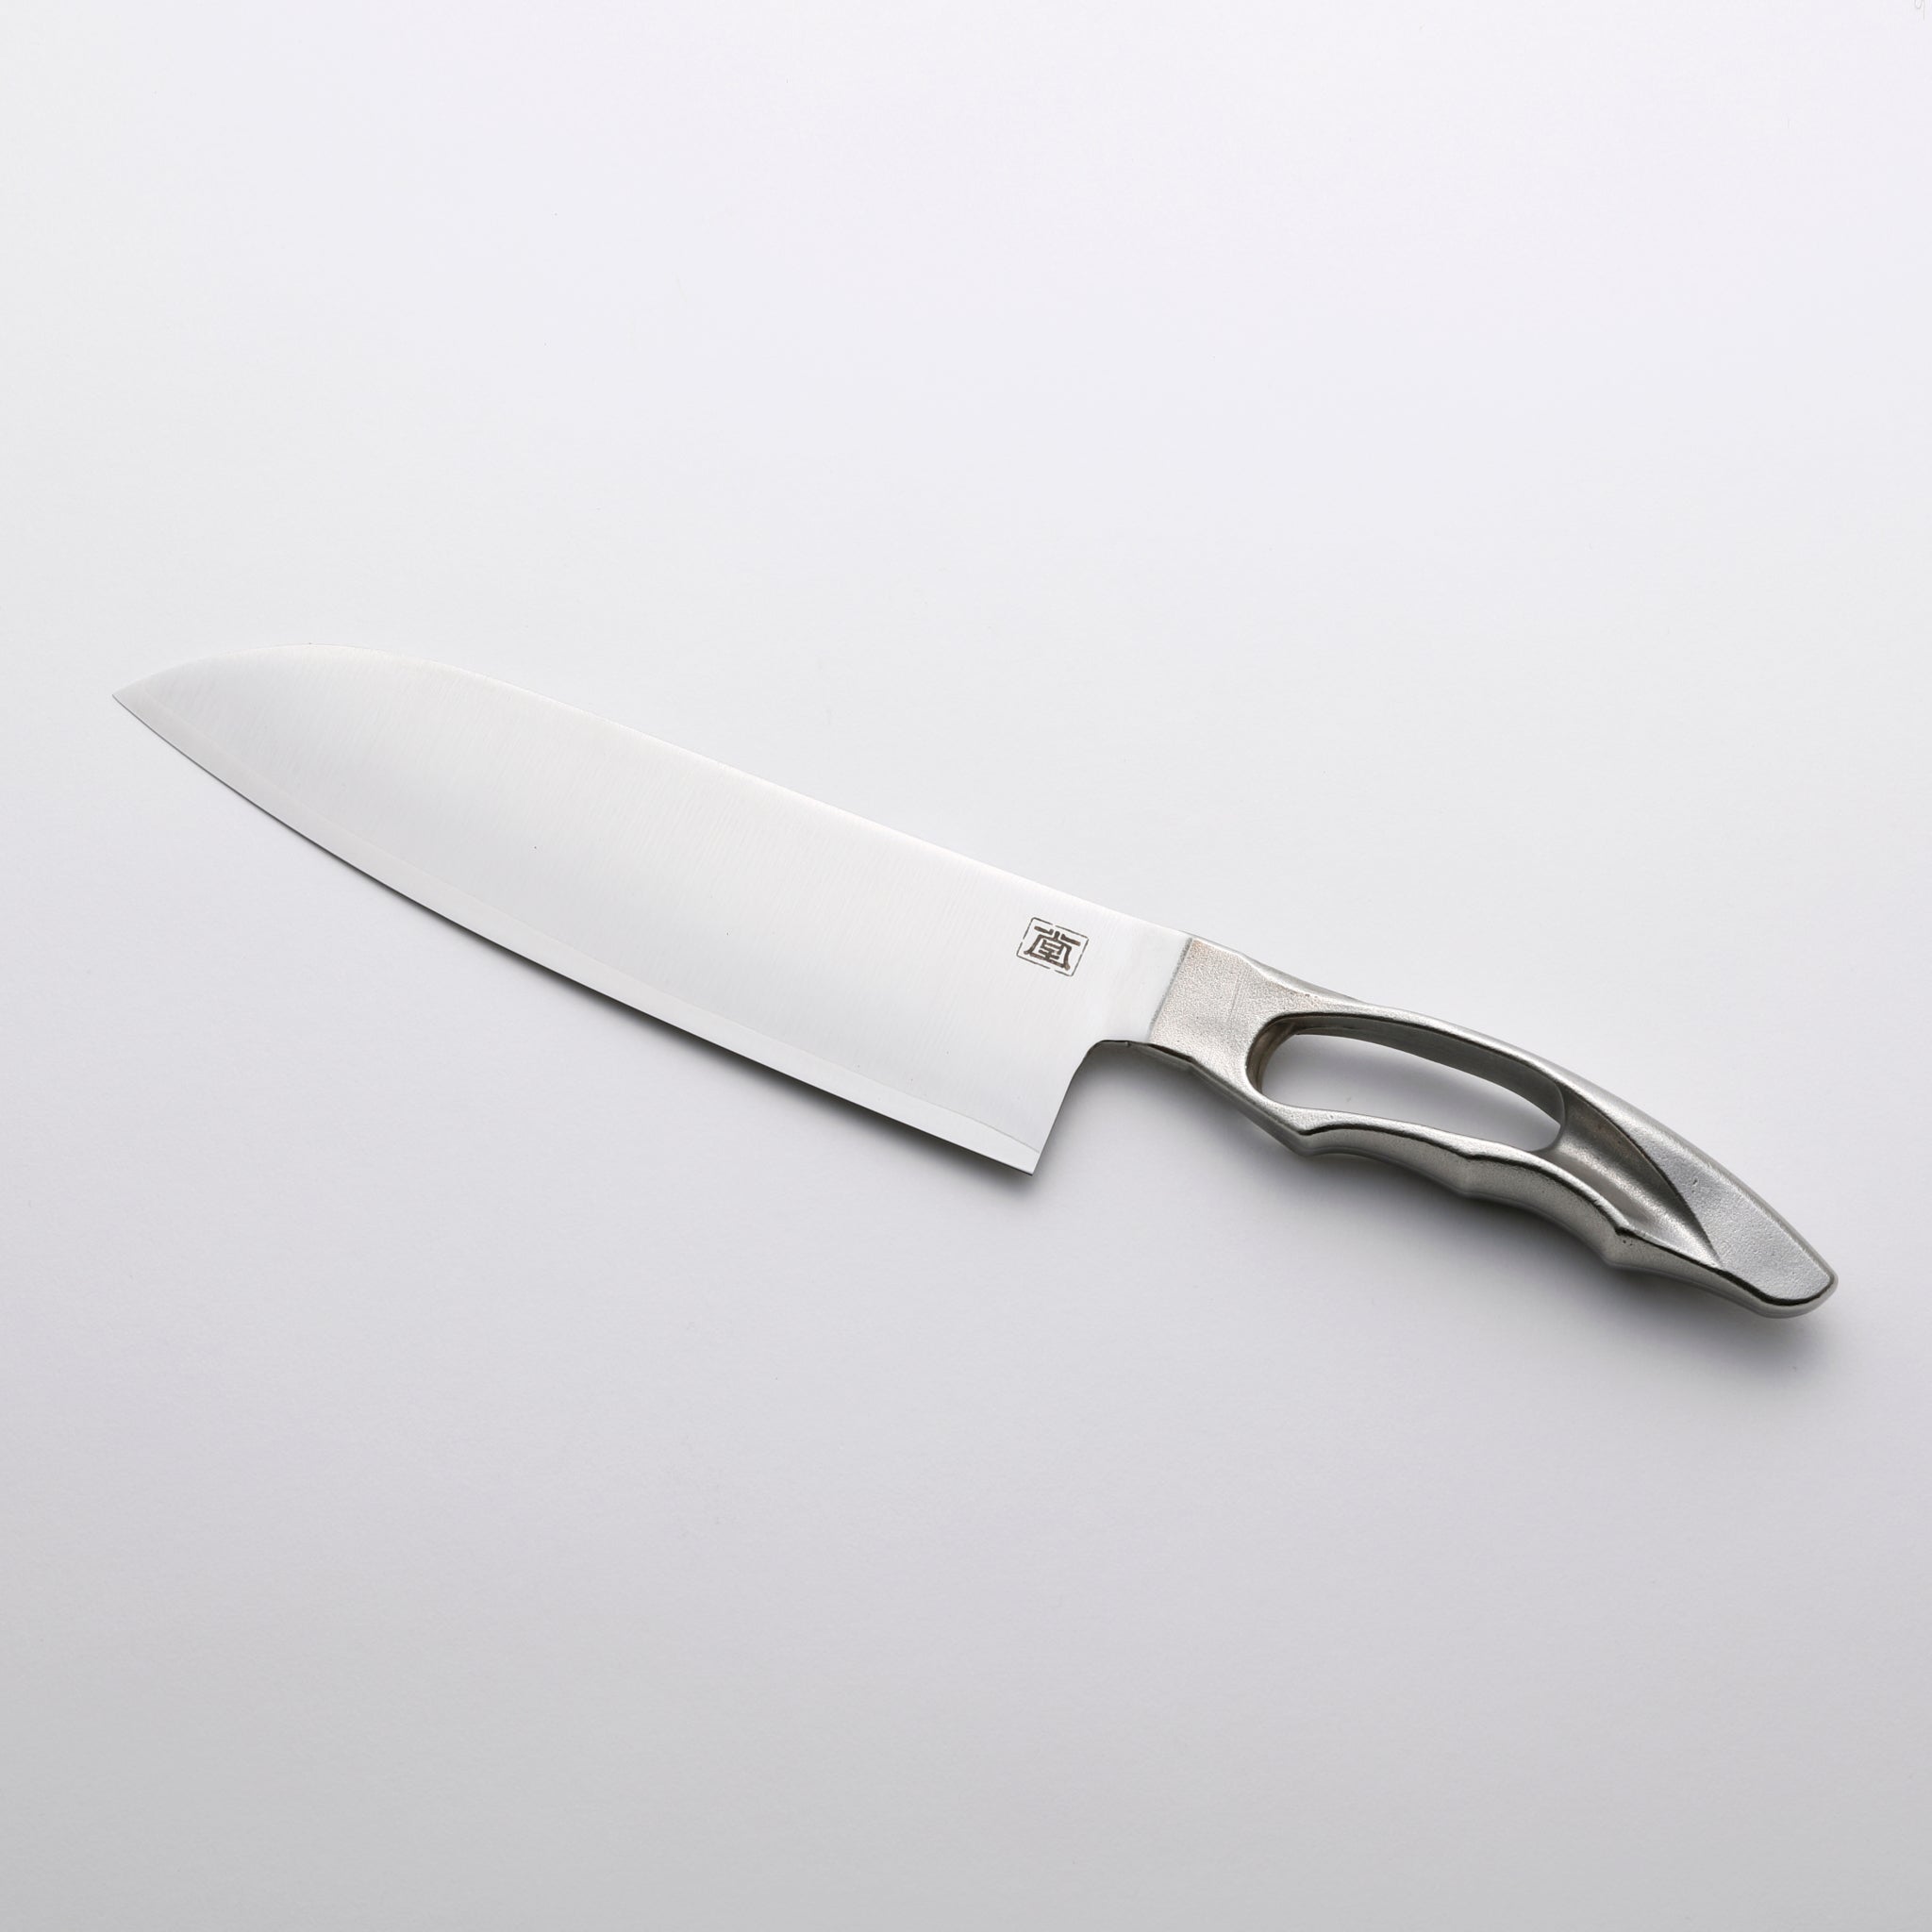 Japanese Multipurpose Kitchen Knife 17cm